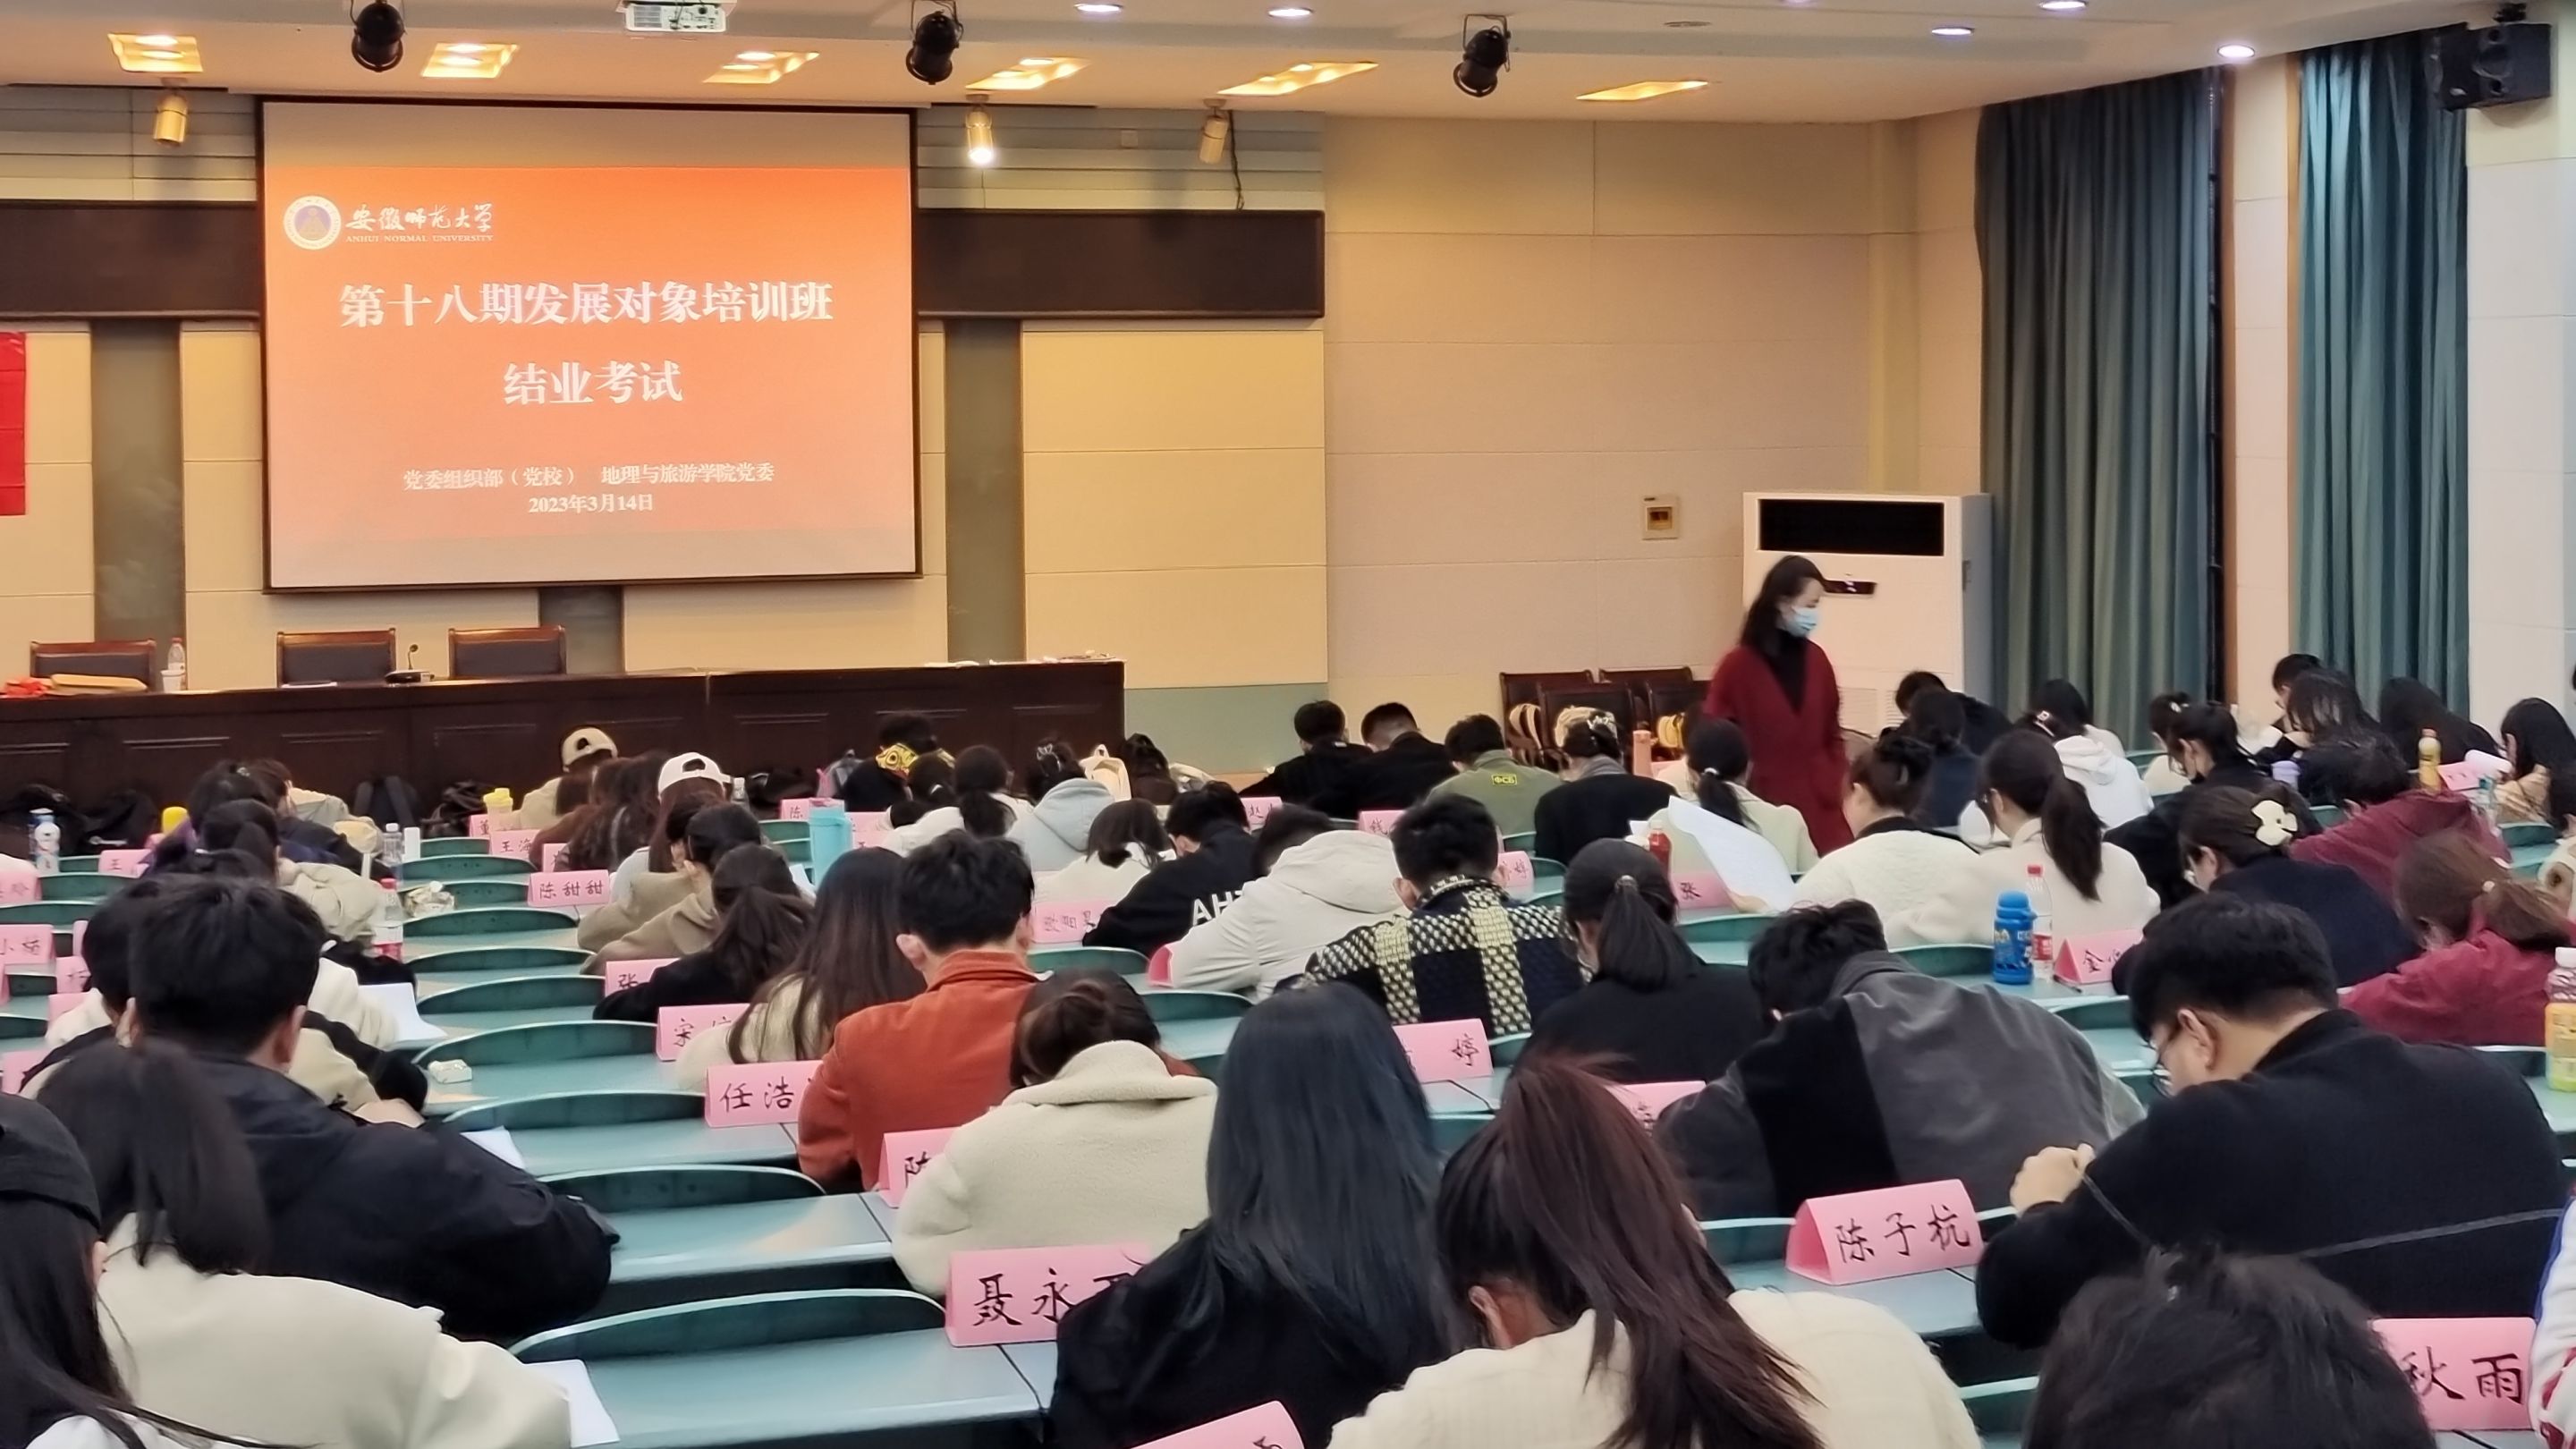 广州工商技师学院开启教学督导技术培训之旅迈向准确高质高效